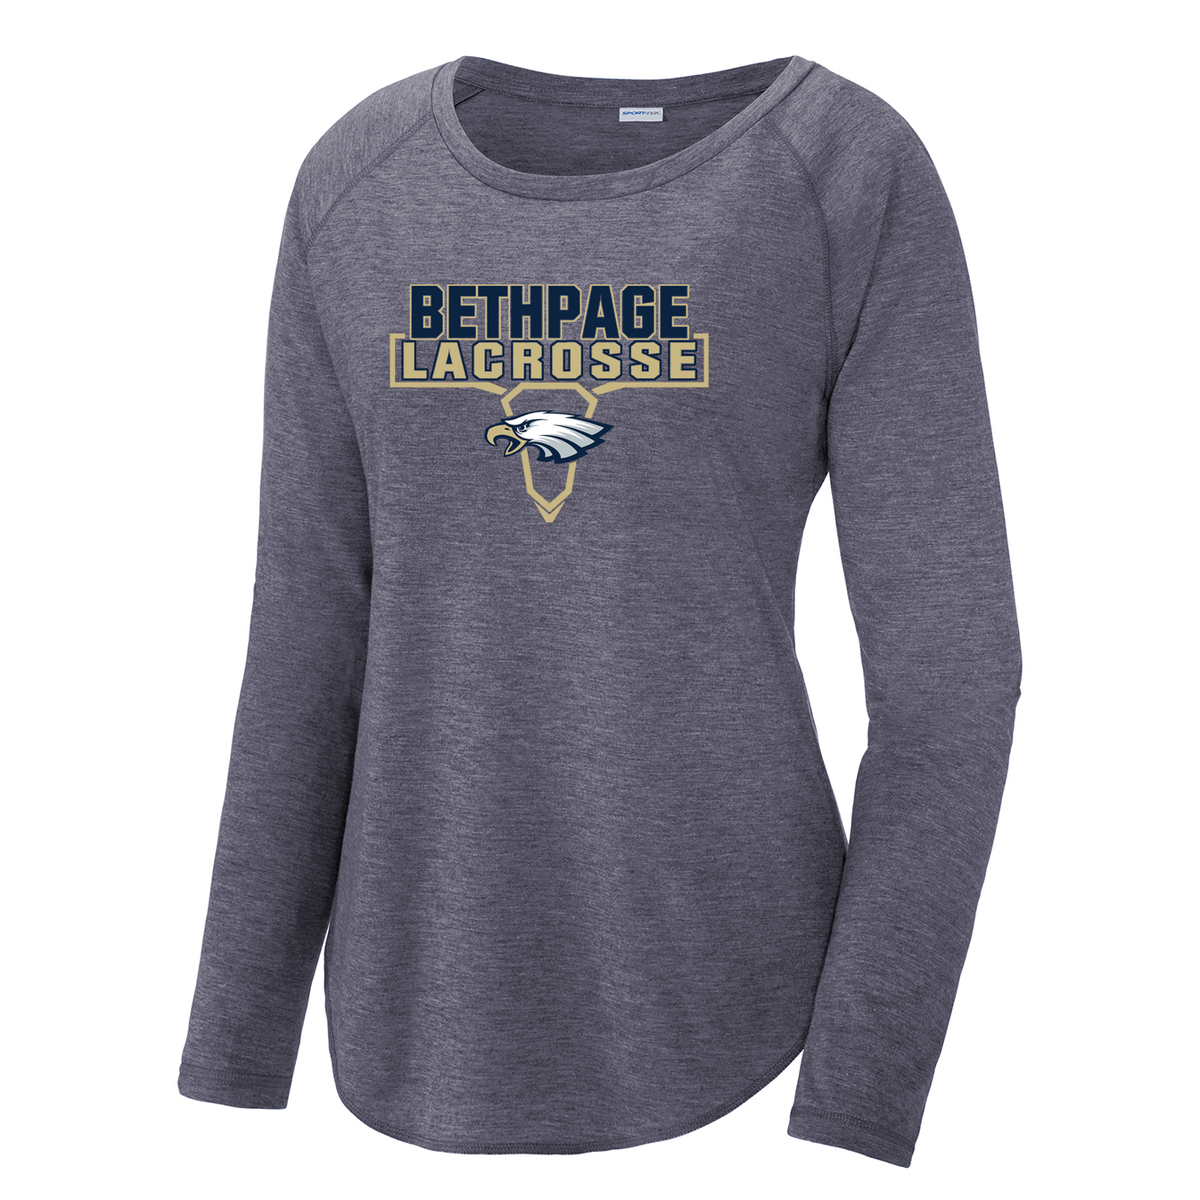 Bethpage HS Lacrosse Women's Raglan Long Sleeve CottonTouch